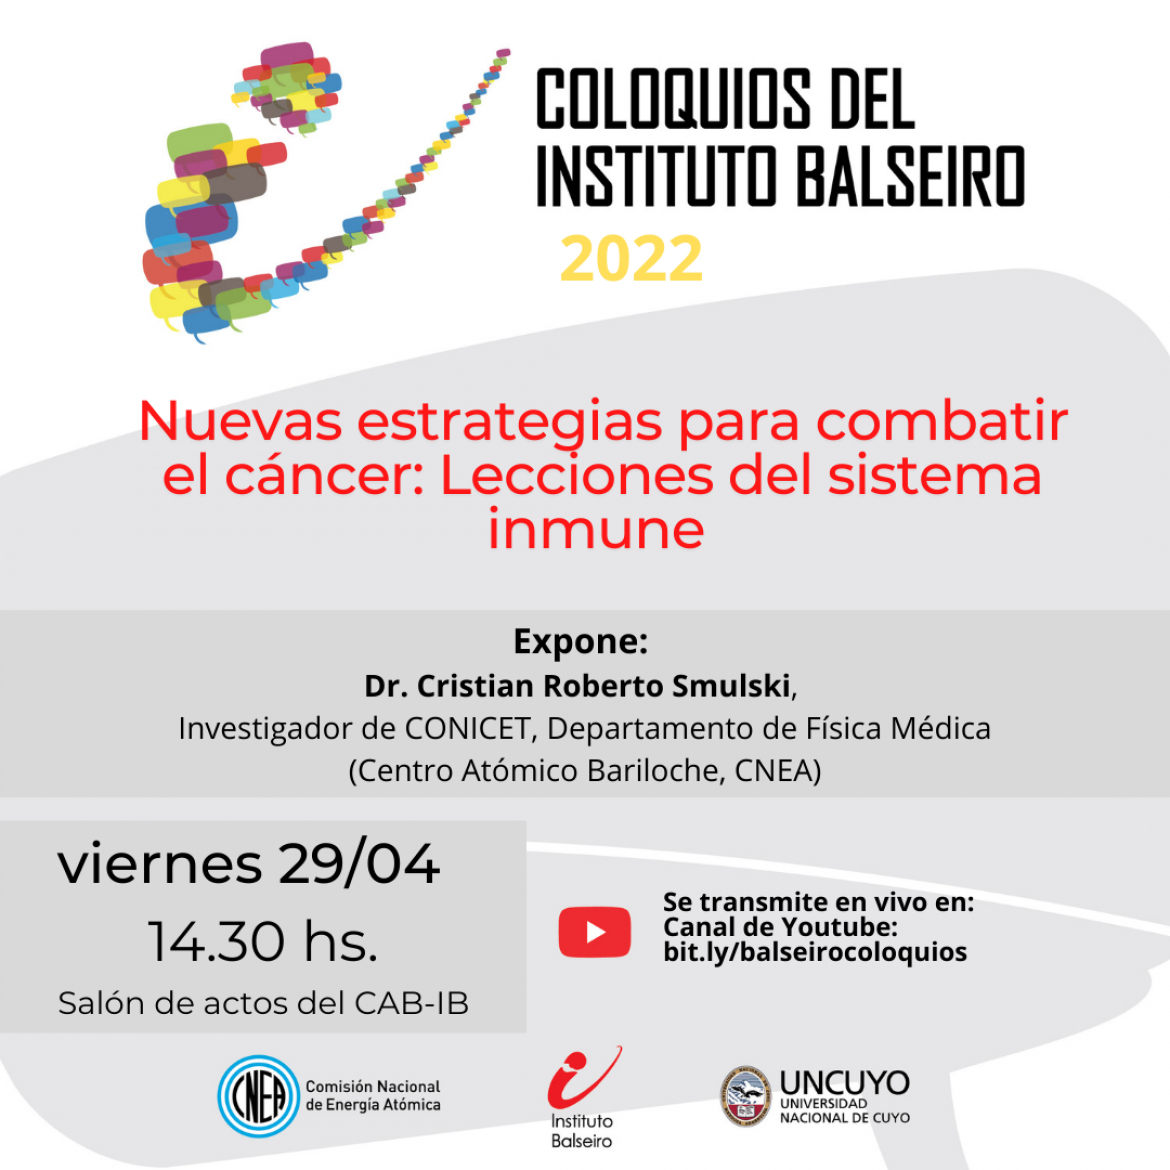 COLOQUIO DEL 29/04: Nuevas estrategias para combatir el cáncer: Lecciones del sistema inmune